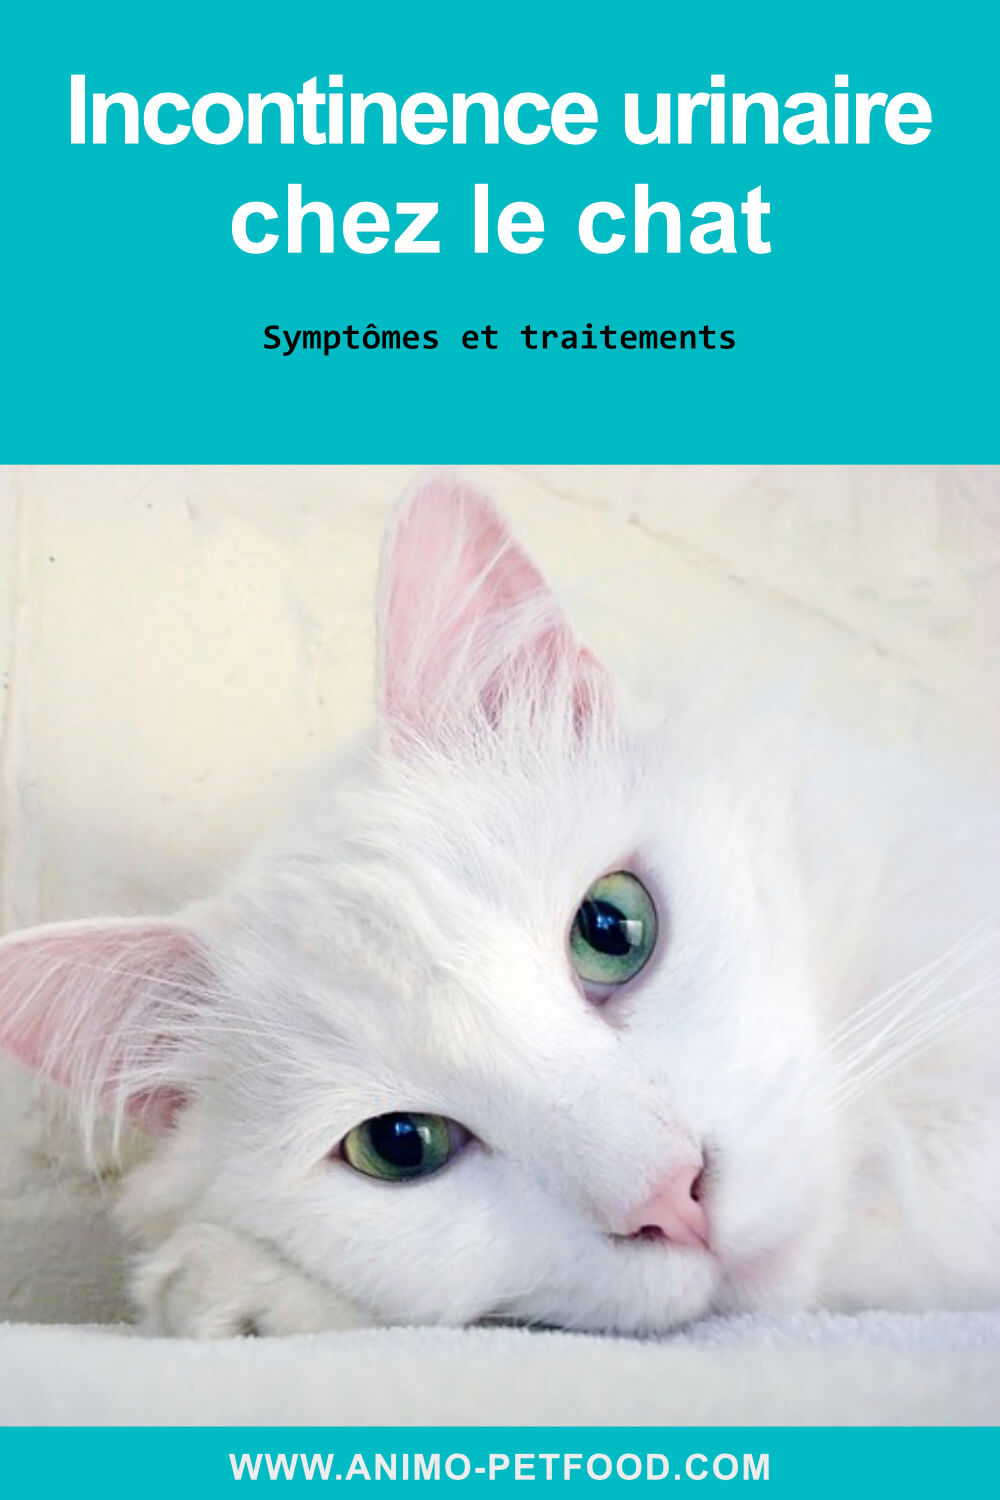 incontinence urinaire chez le chat-symptômes incontinence chat - traitement incontinence chat -diabète félin-infection des voies urinaires chat- maladie rénale chat